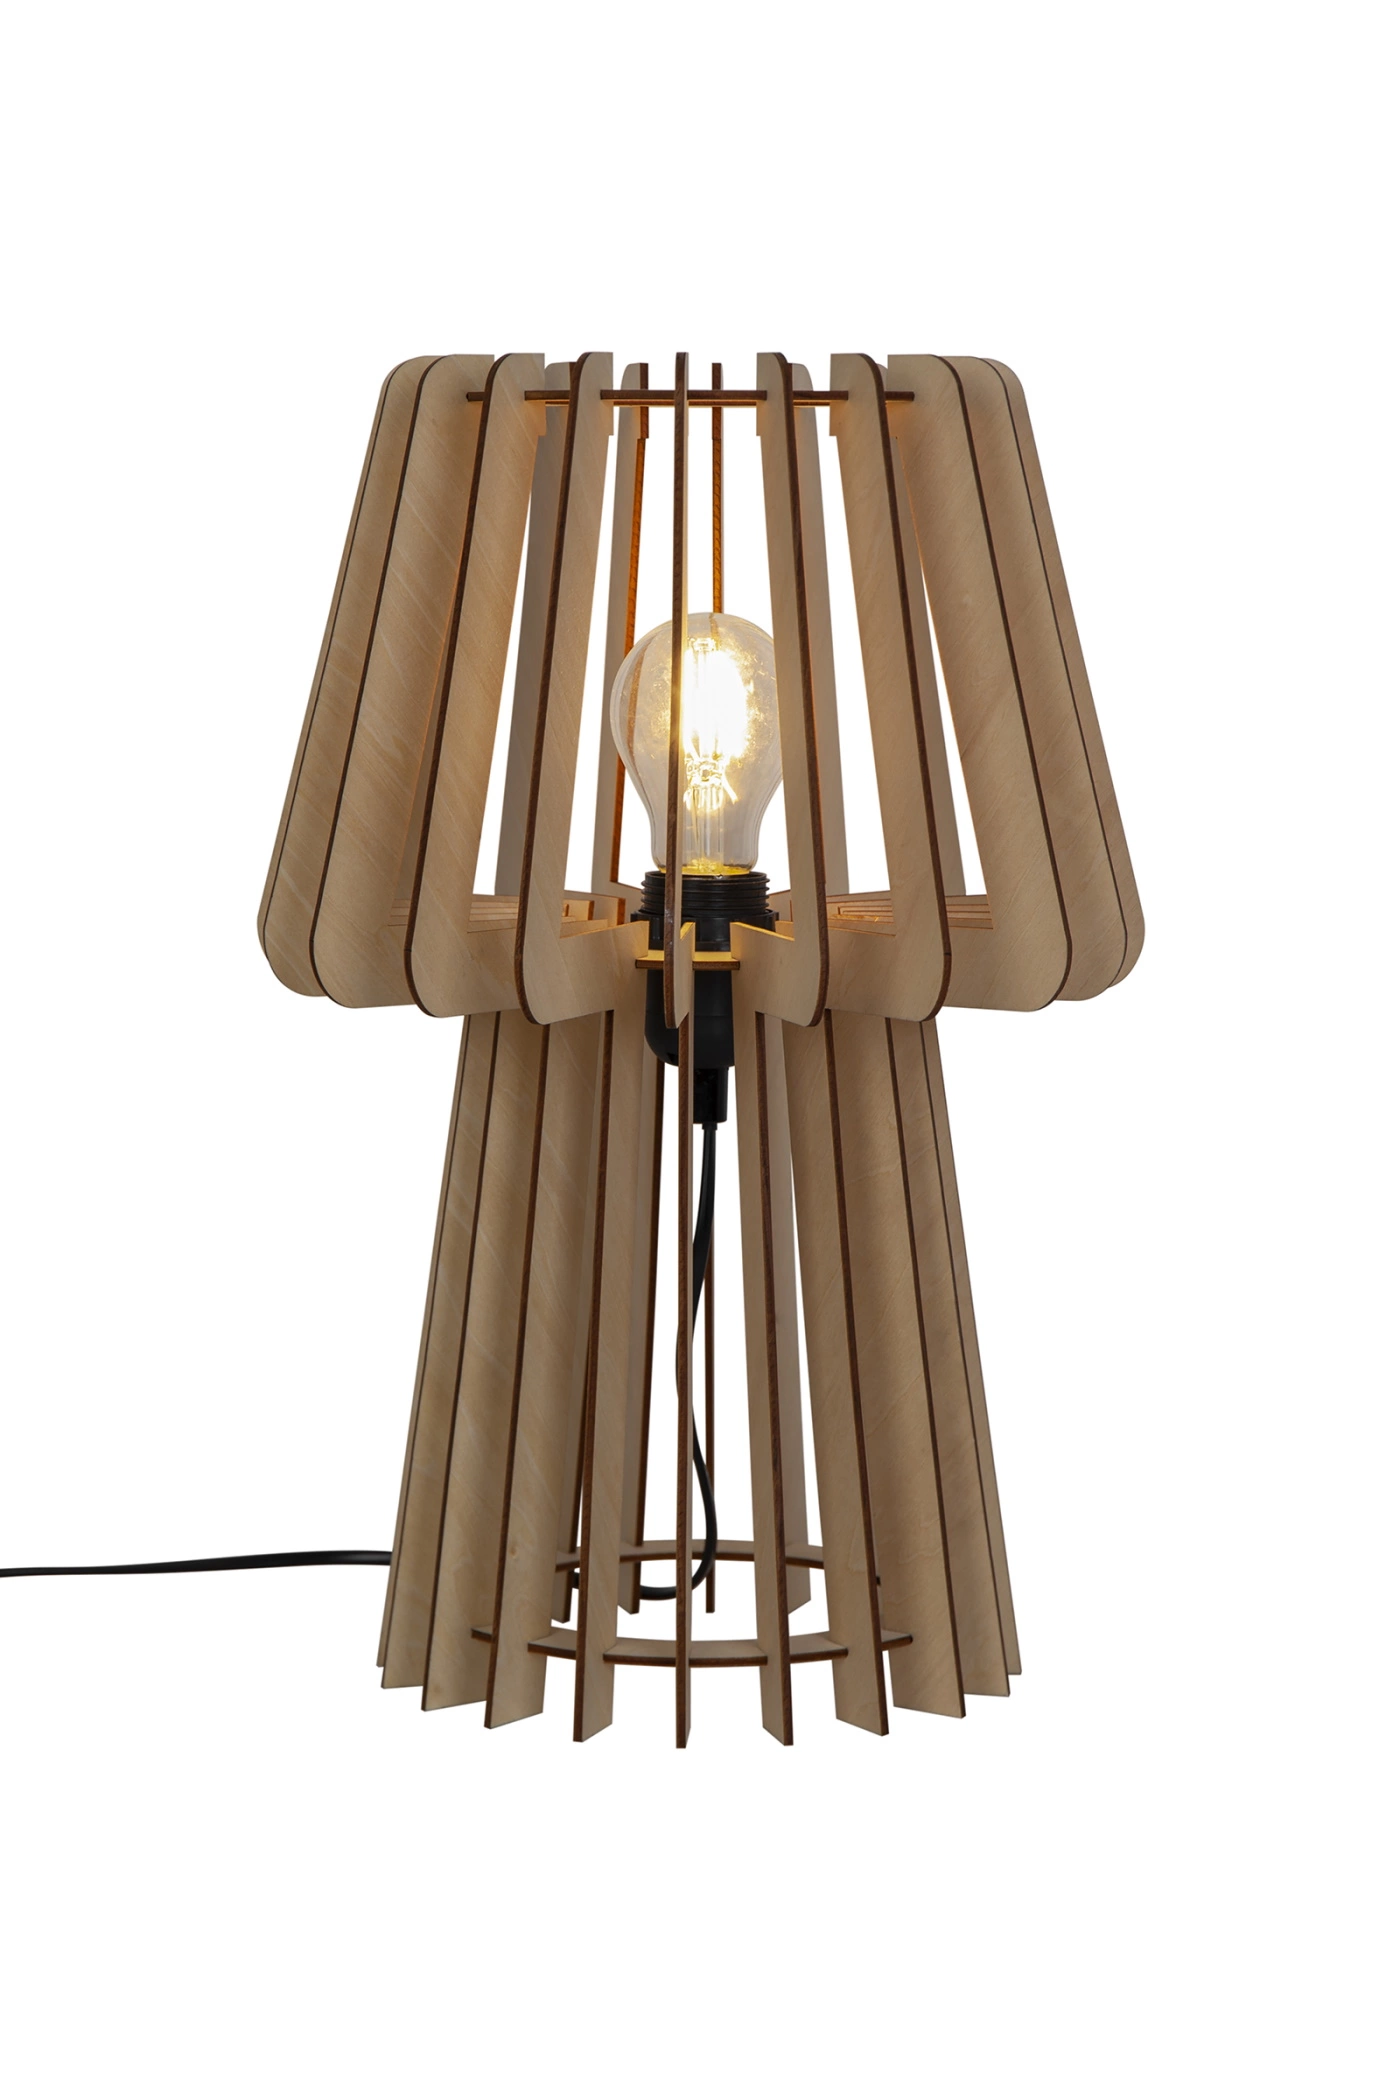   
                        Настільна лампа NORDLUX (Данія) 51226    
                         у стилі кантрі.  
                        Тип джерела світла: cвітлодіодні led, енергозберігаючі, розжарювання.                                                 Кольори плафонів і підвісок: коричневий.                         Матеріал: дерево.                          фото 1